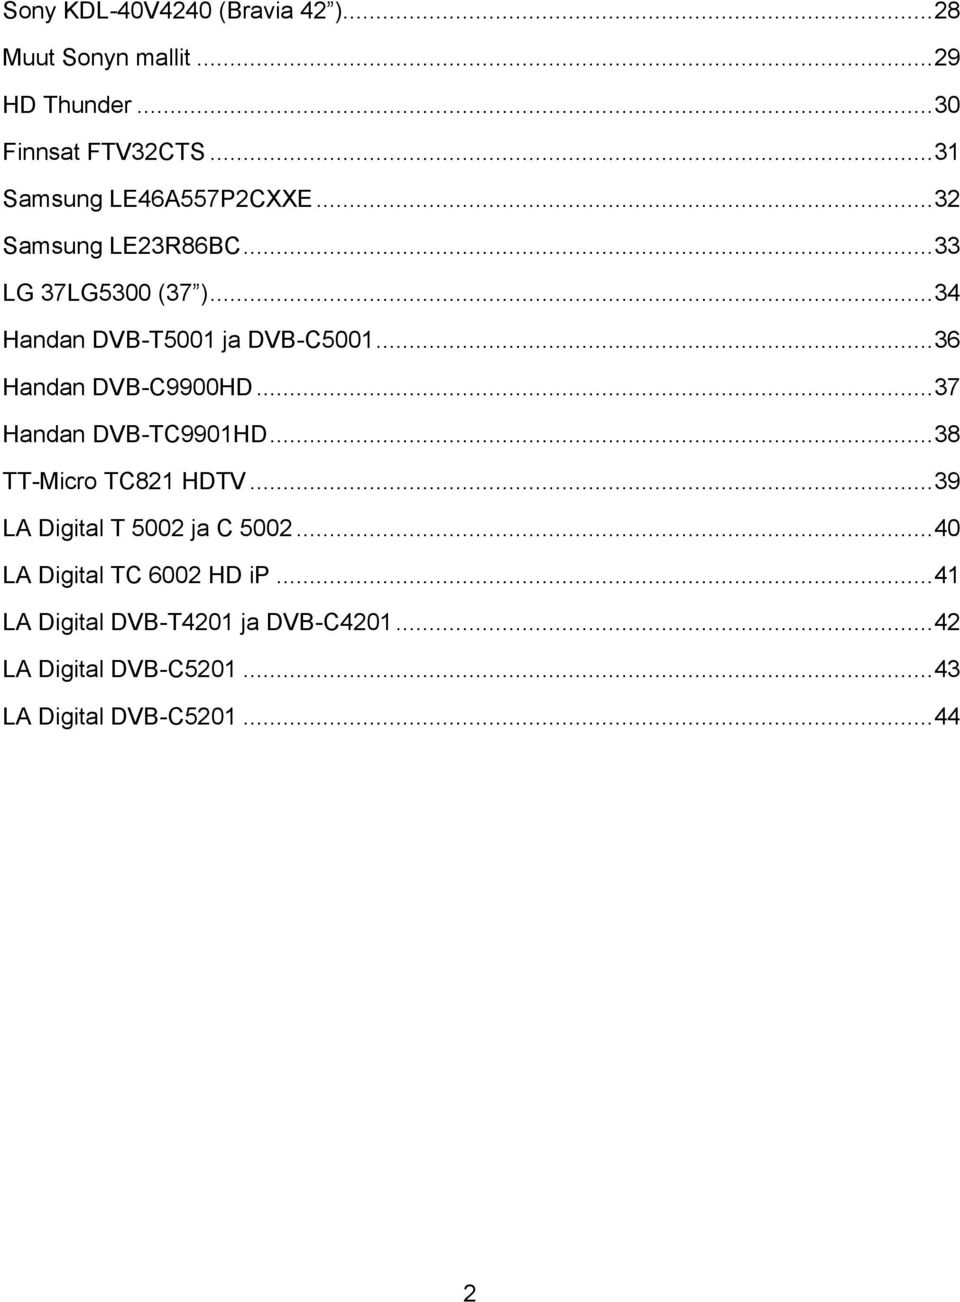 .. 36 Handan DVB-C9900HD... 37 Handan DVB-TC9901HD... 38 TT-Micro TC821 HDTV... 39 LA Digital T 5002 ja C 5002.